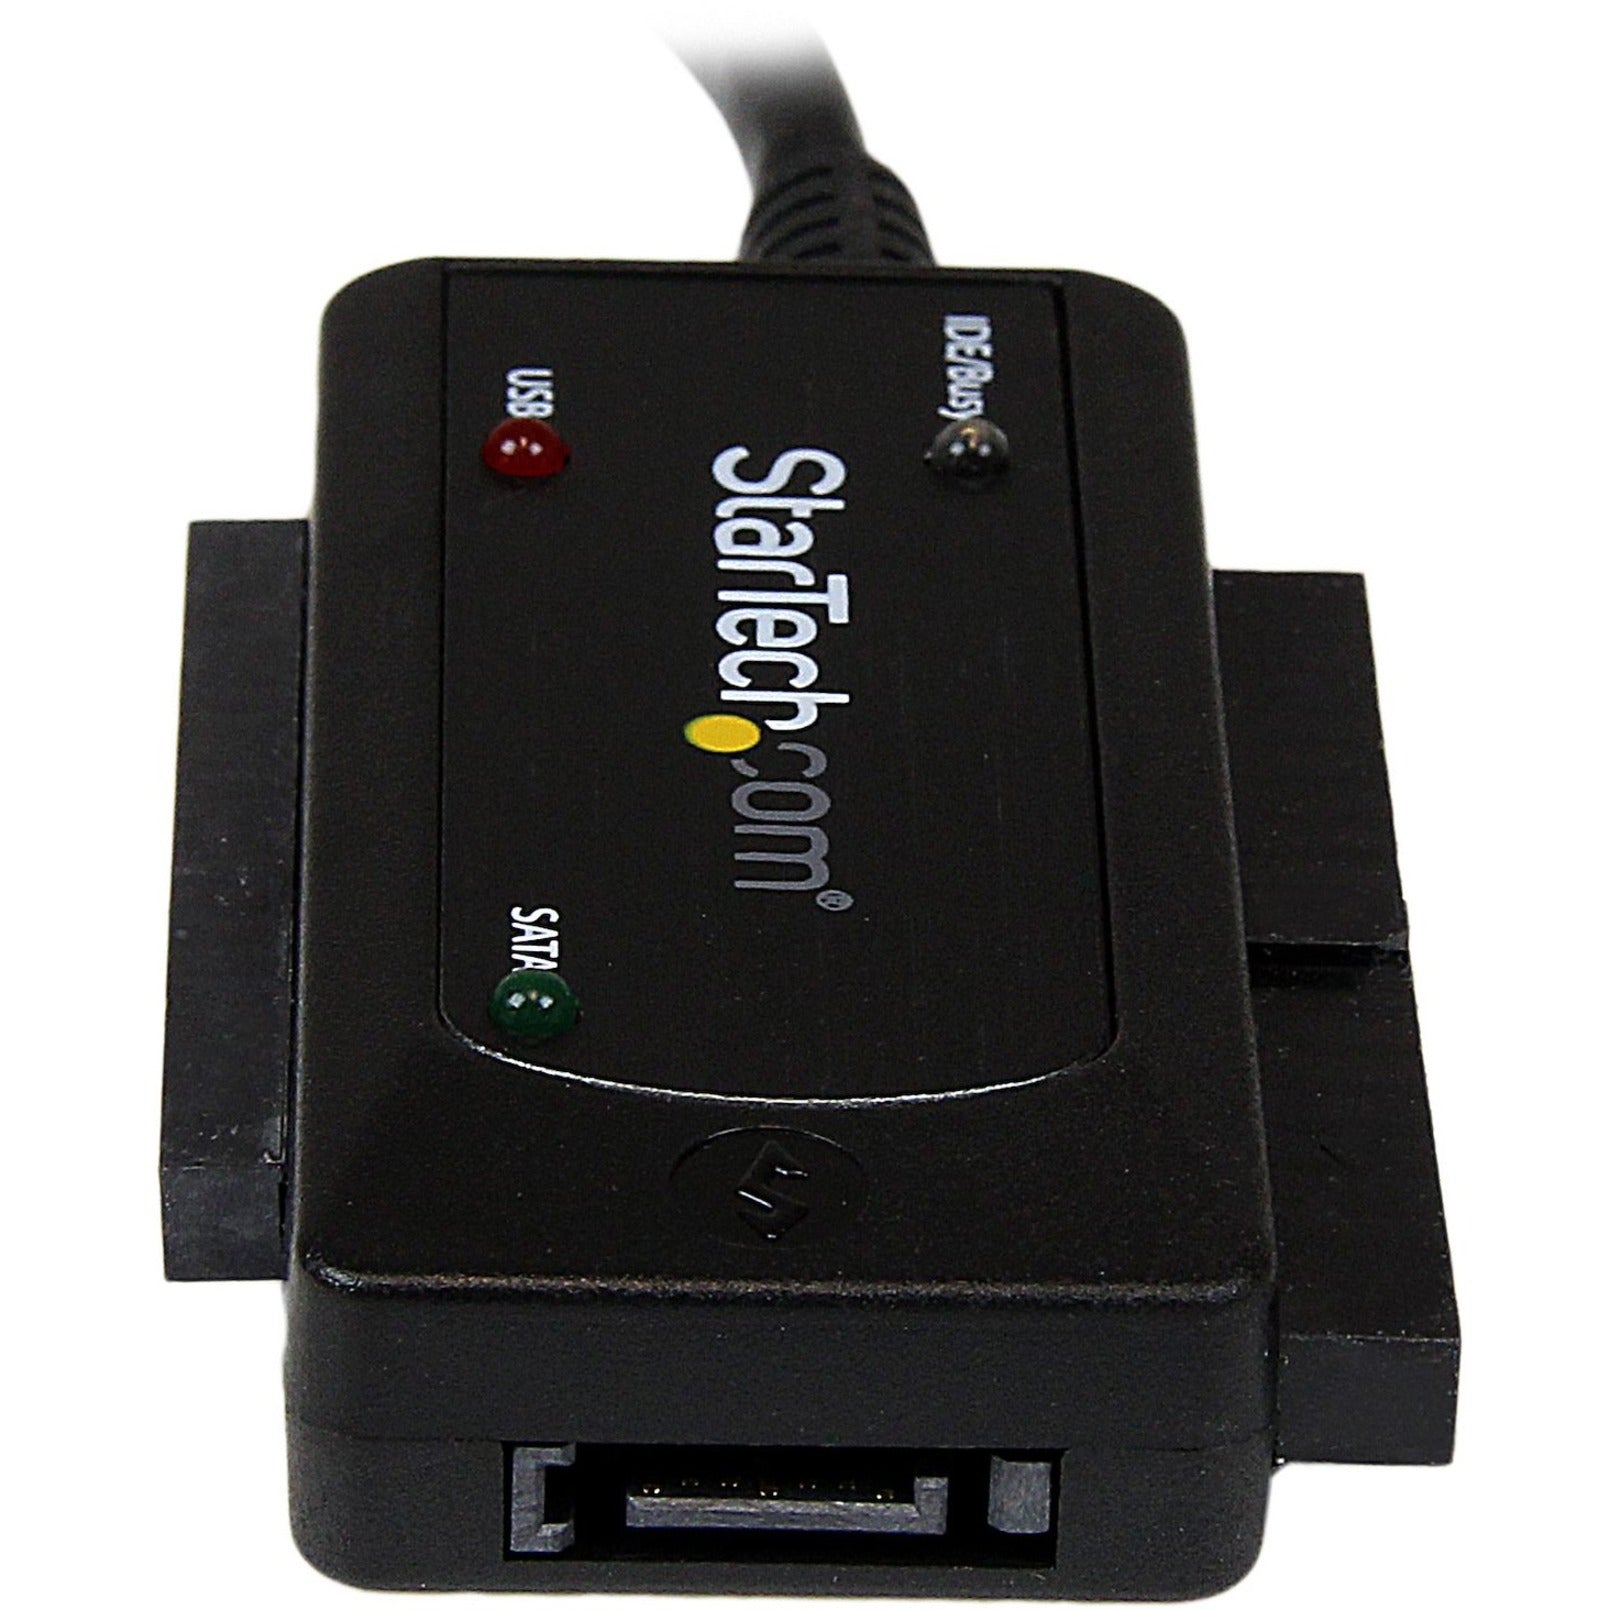 اسم العلامة التجارية: StarTech.com محول وحدة تخزين البيانات USB 3.0 إلى SATA أو IDE ، نقل البيانات بسرعة عالية